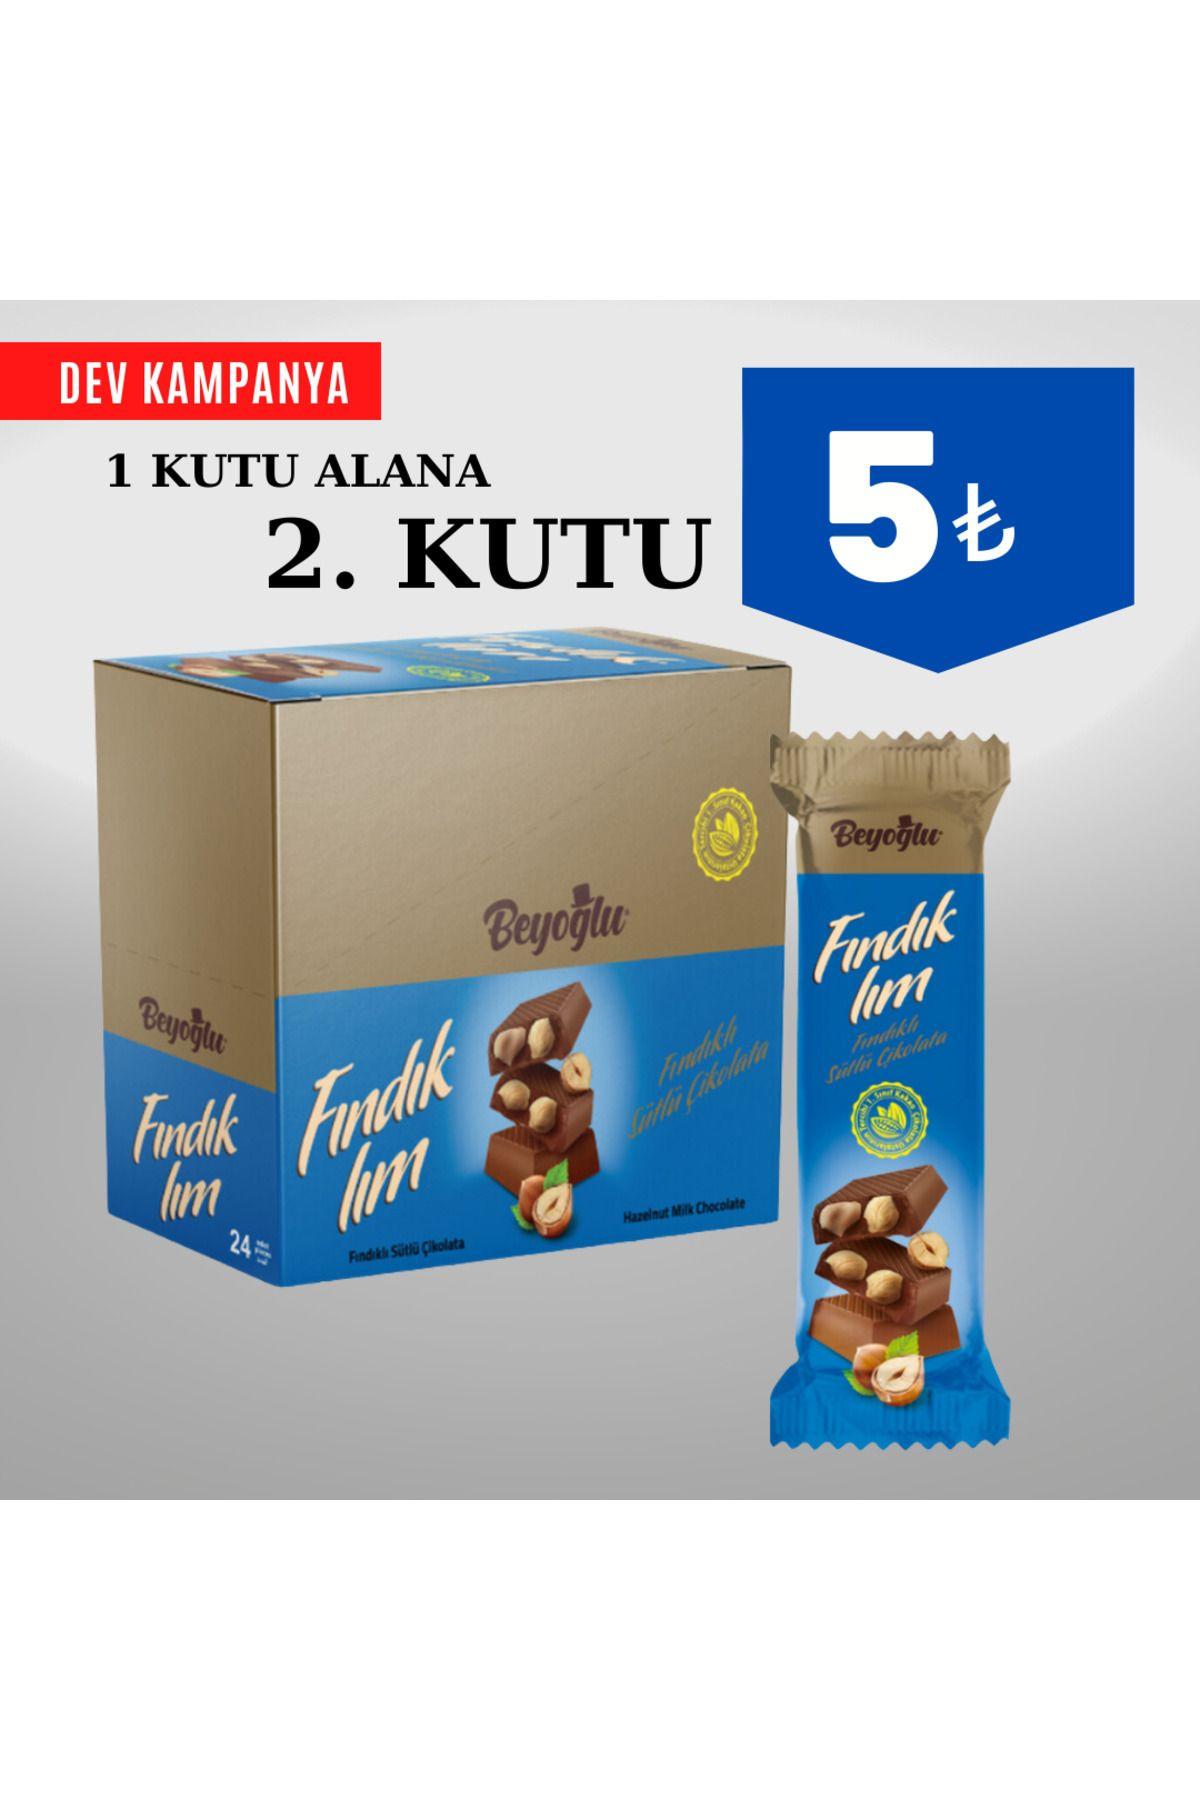 Beyoğlu Çikolata Fındıklım Tablet Çikolata 38 Gr. 48 adet toplam 1.824 gram 375 TL.